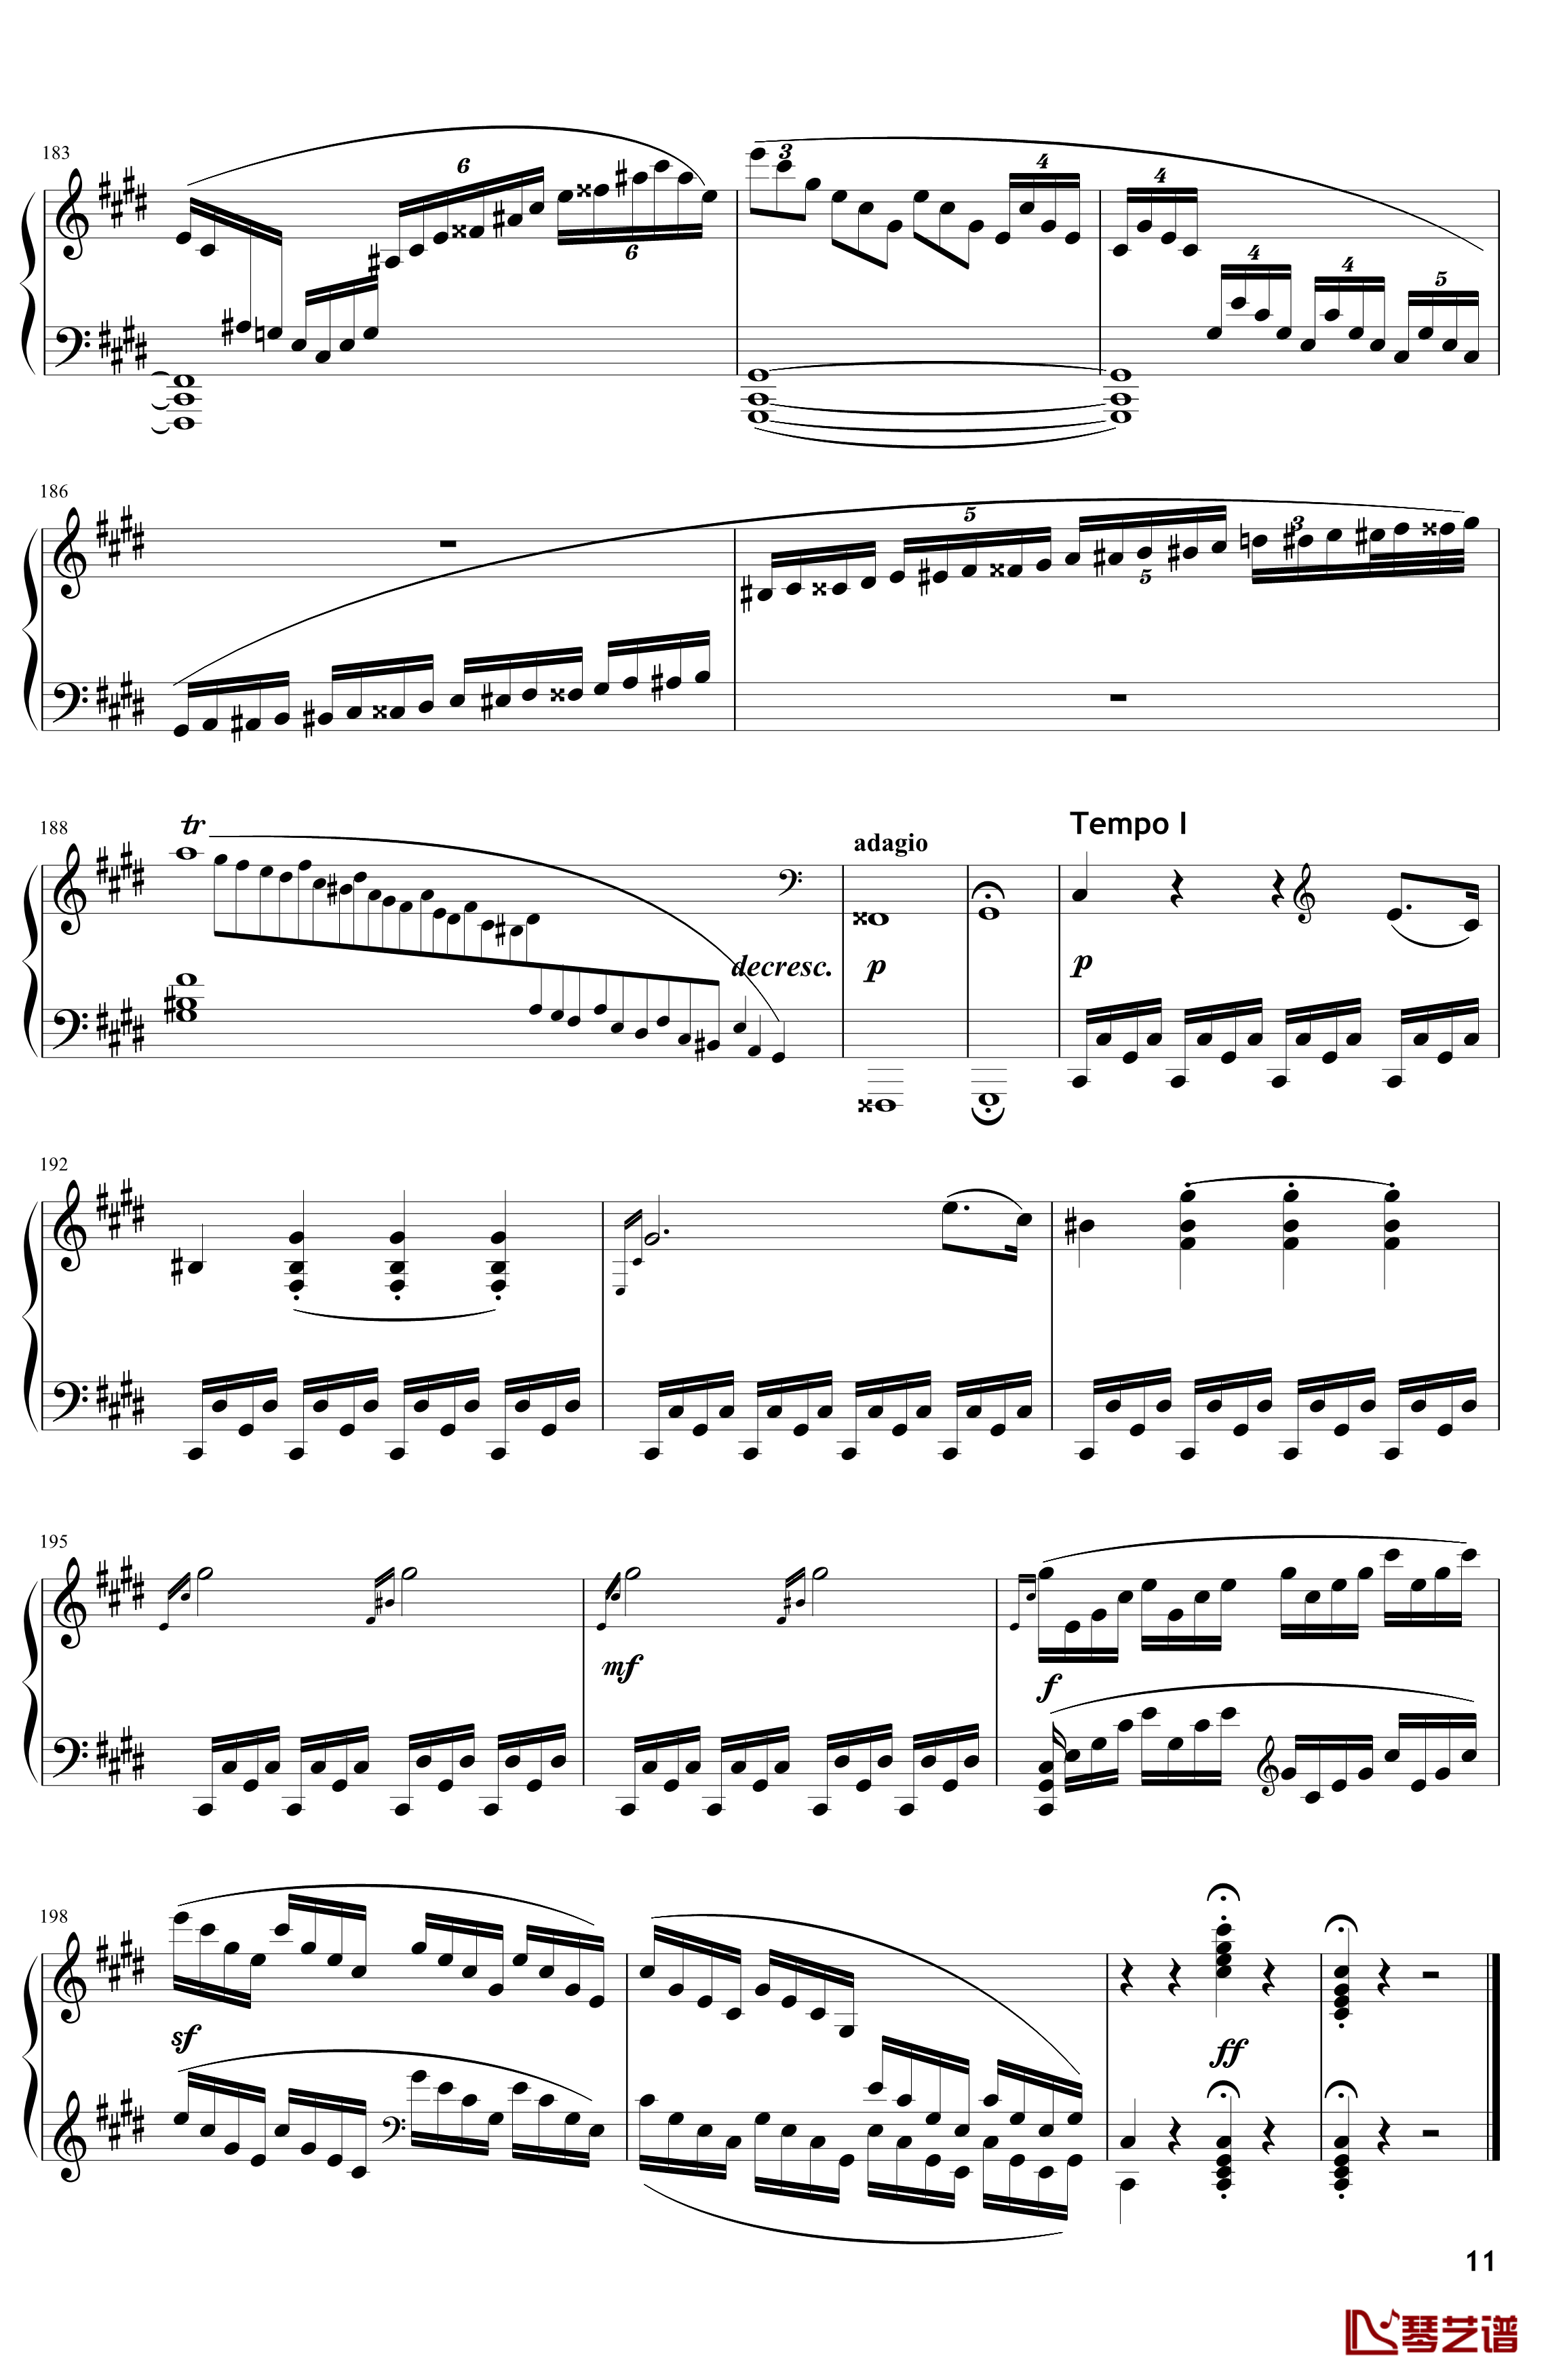 月光钢琴谱-奏鸣曲-贝多芬-beethoven11